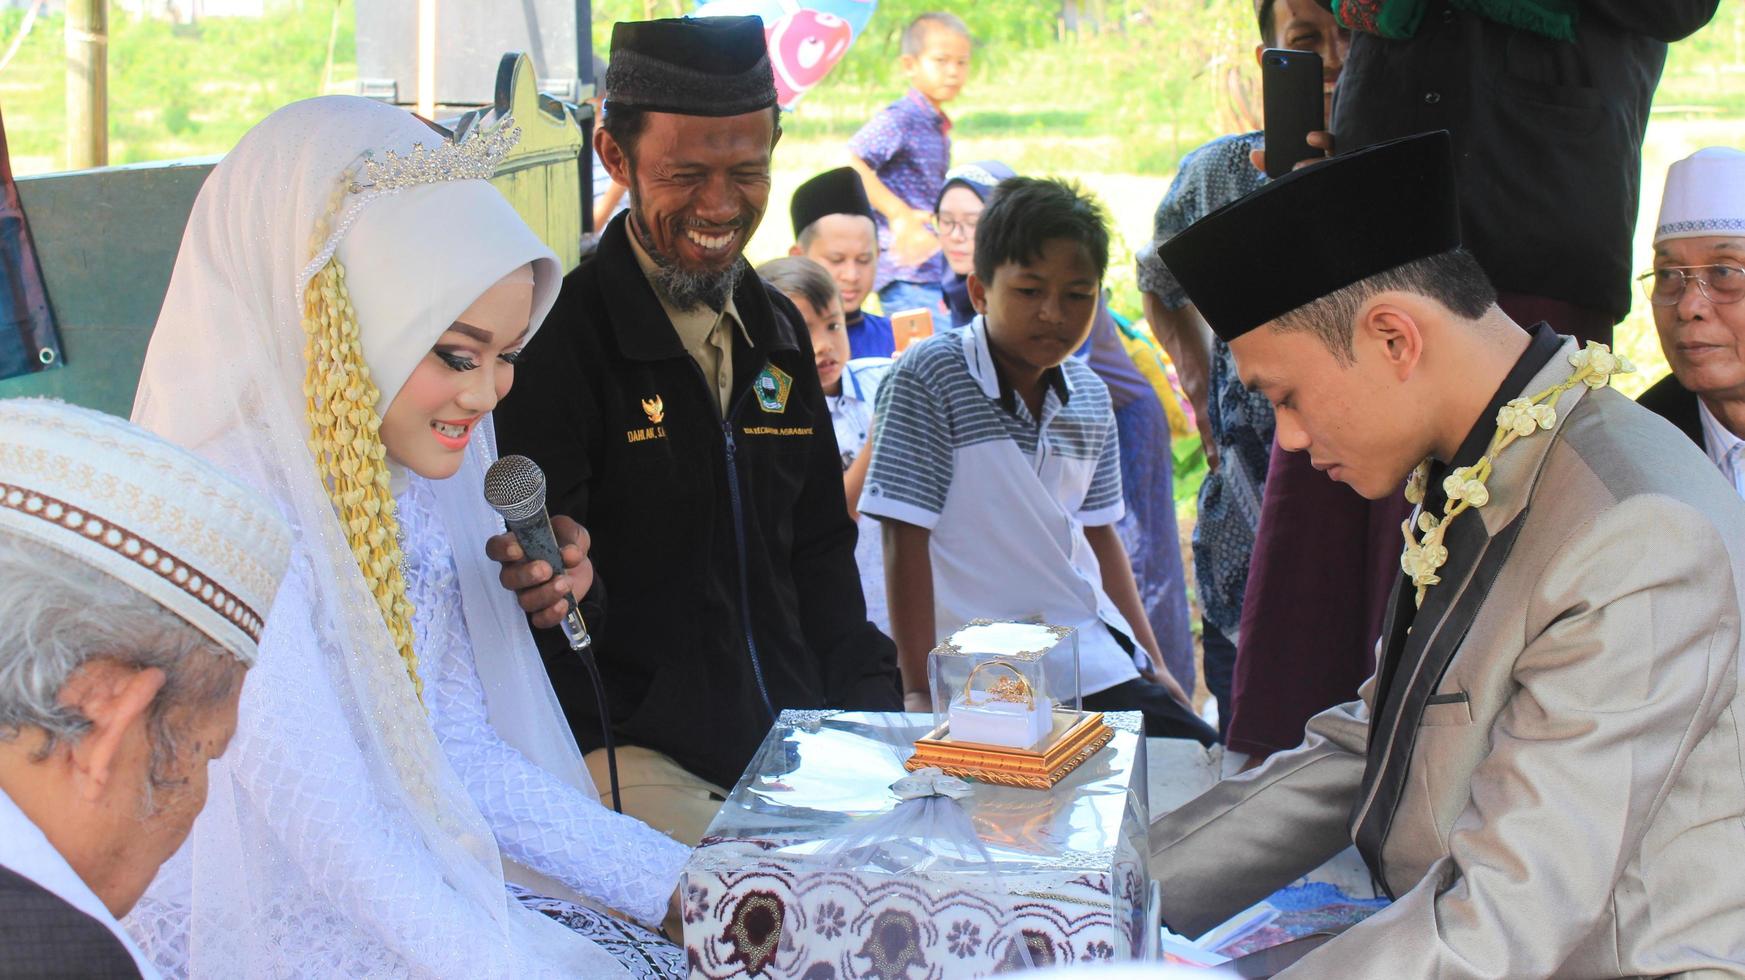 cianjur regency, västra java, indonesien den 12 juni 2021, leverans av hemgiften från brudgummen till bruden. islamisk bröllopskultur i Indonesien. foto